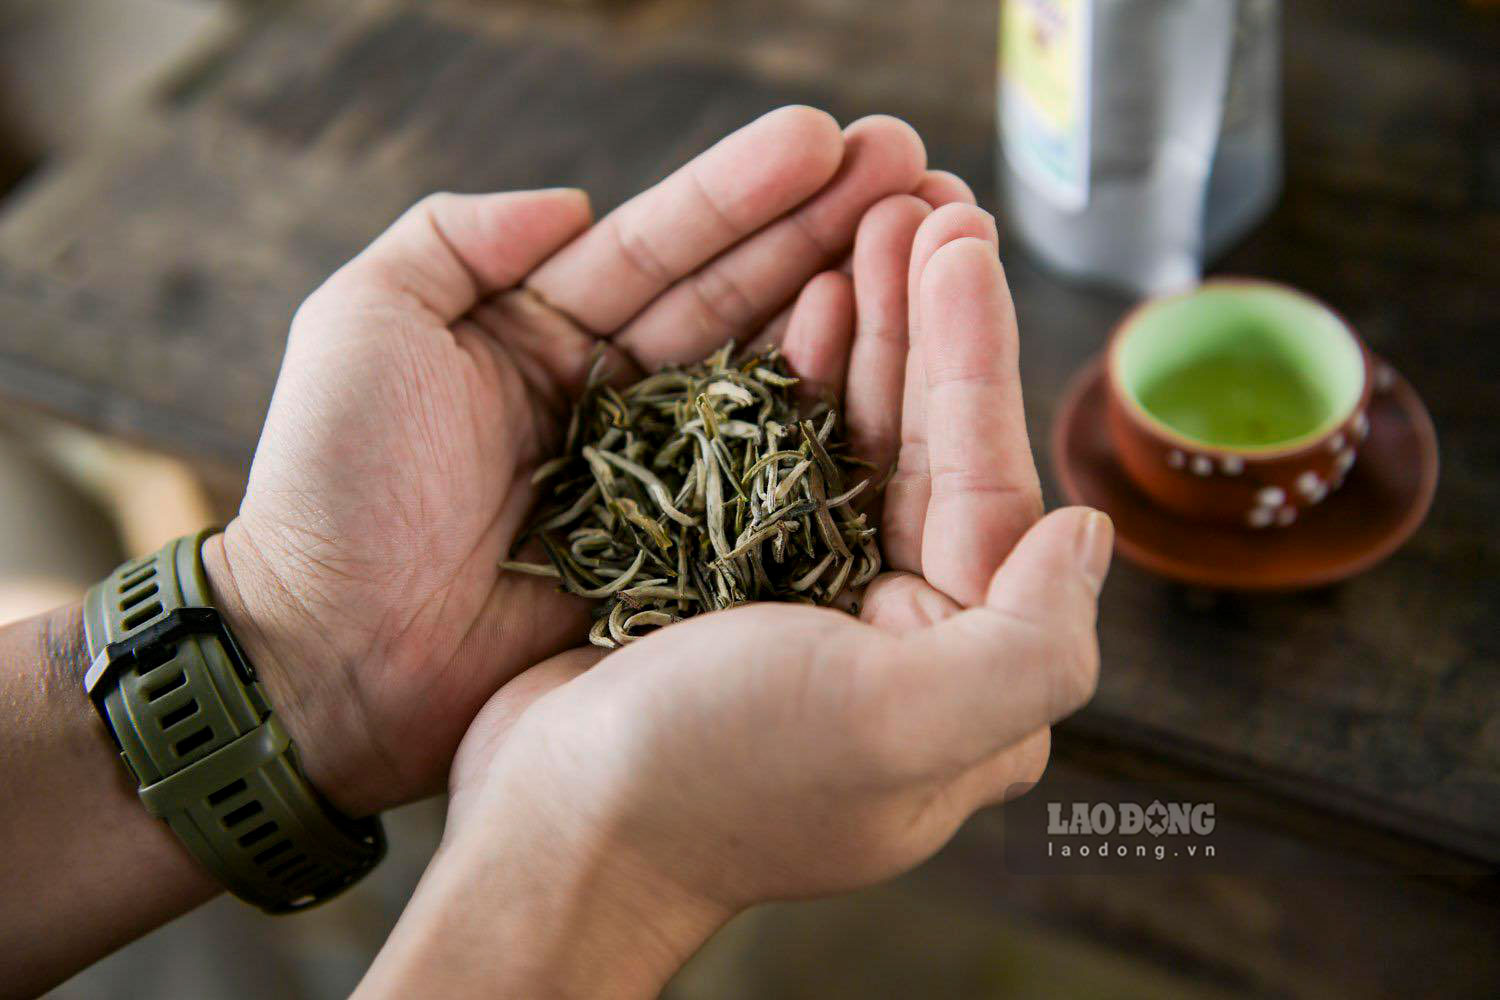 Sau khi thu hoạch, búp chè tươi sẽ được phân loại để chế biến thành nhiều loại trà gồm bạch trà, hồng trà, lục trà...